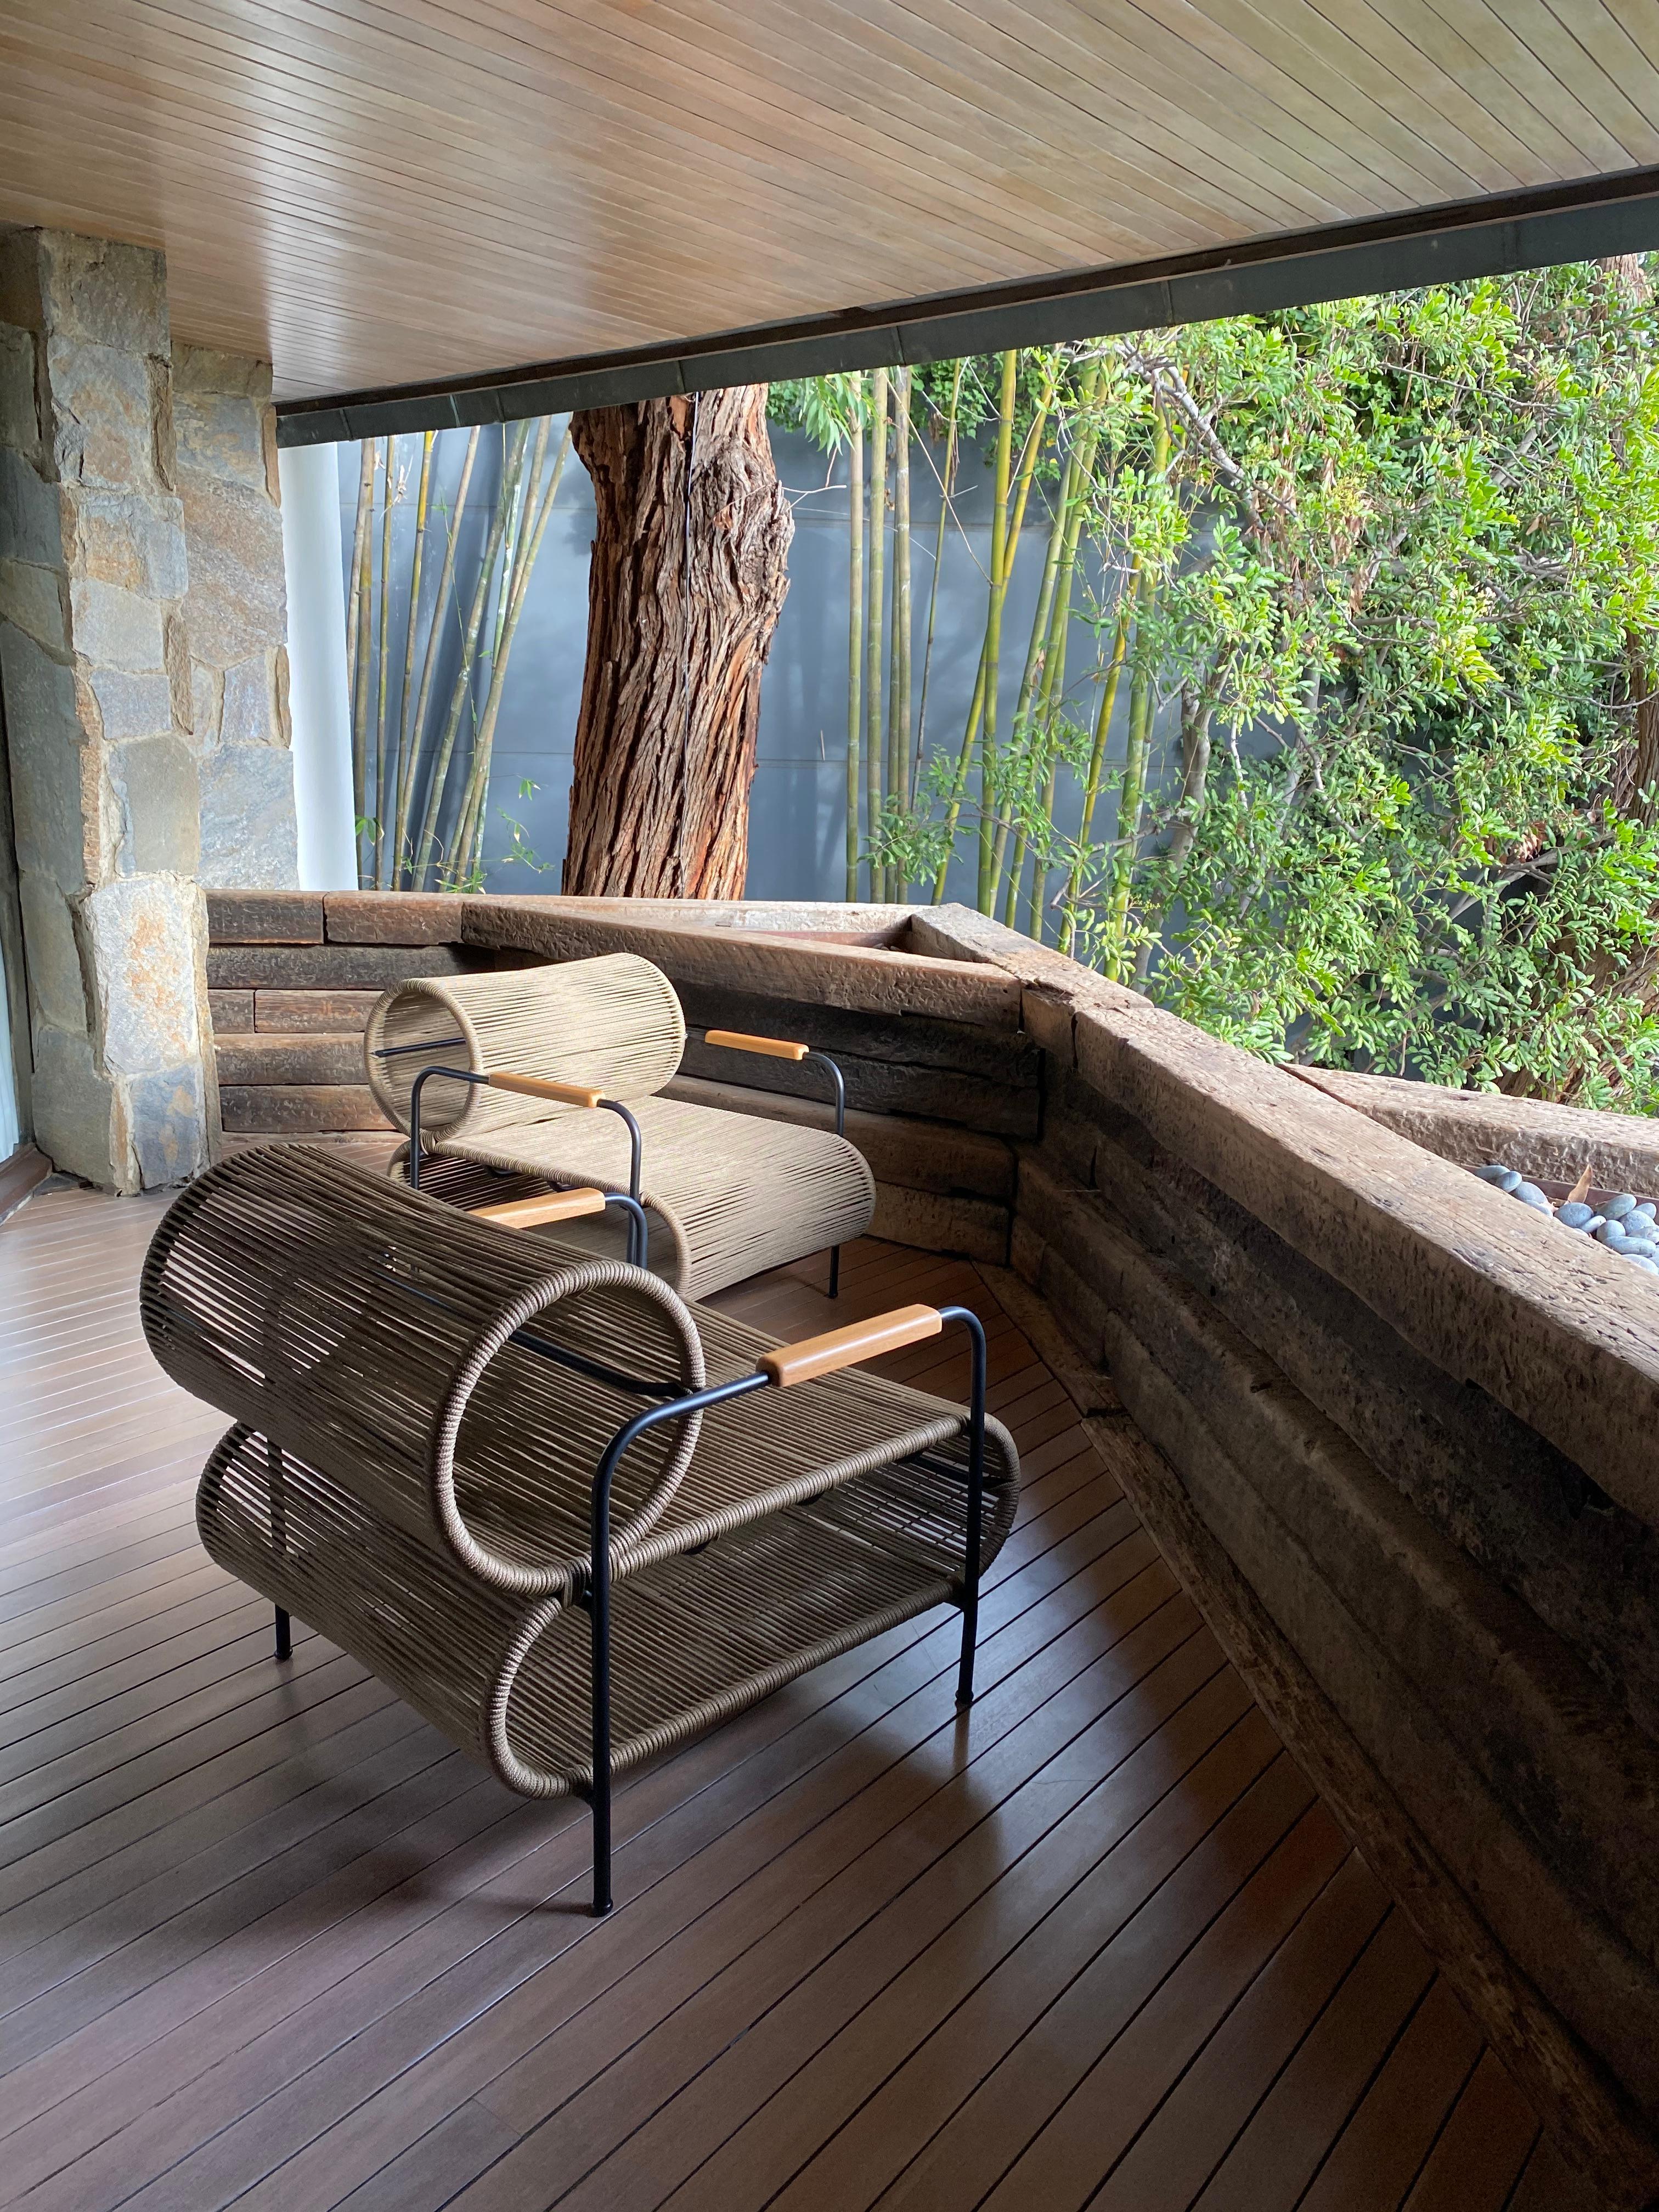 Une paire de fauteuils ELO a été choisie pour les terrasses de la maison Wolff, emblématique des années 60, située dans les collines d'Hollywood à Los Angeles, par le maître architecte John Lautner. Les nouveaux intérieurs ont été réalisés par le